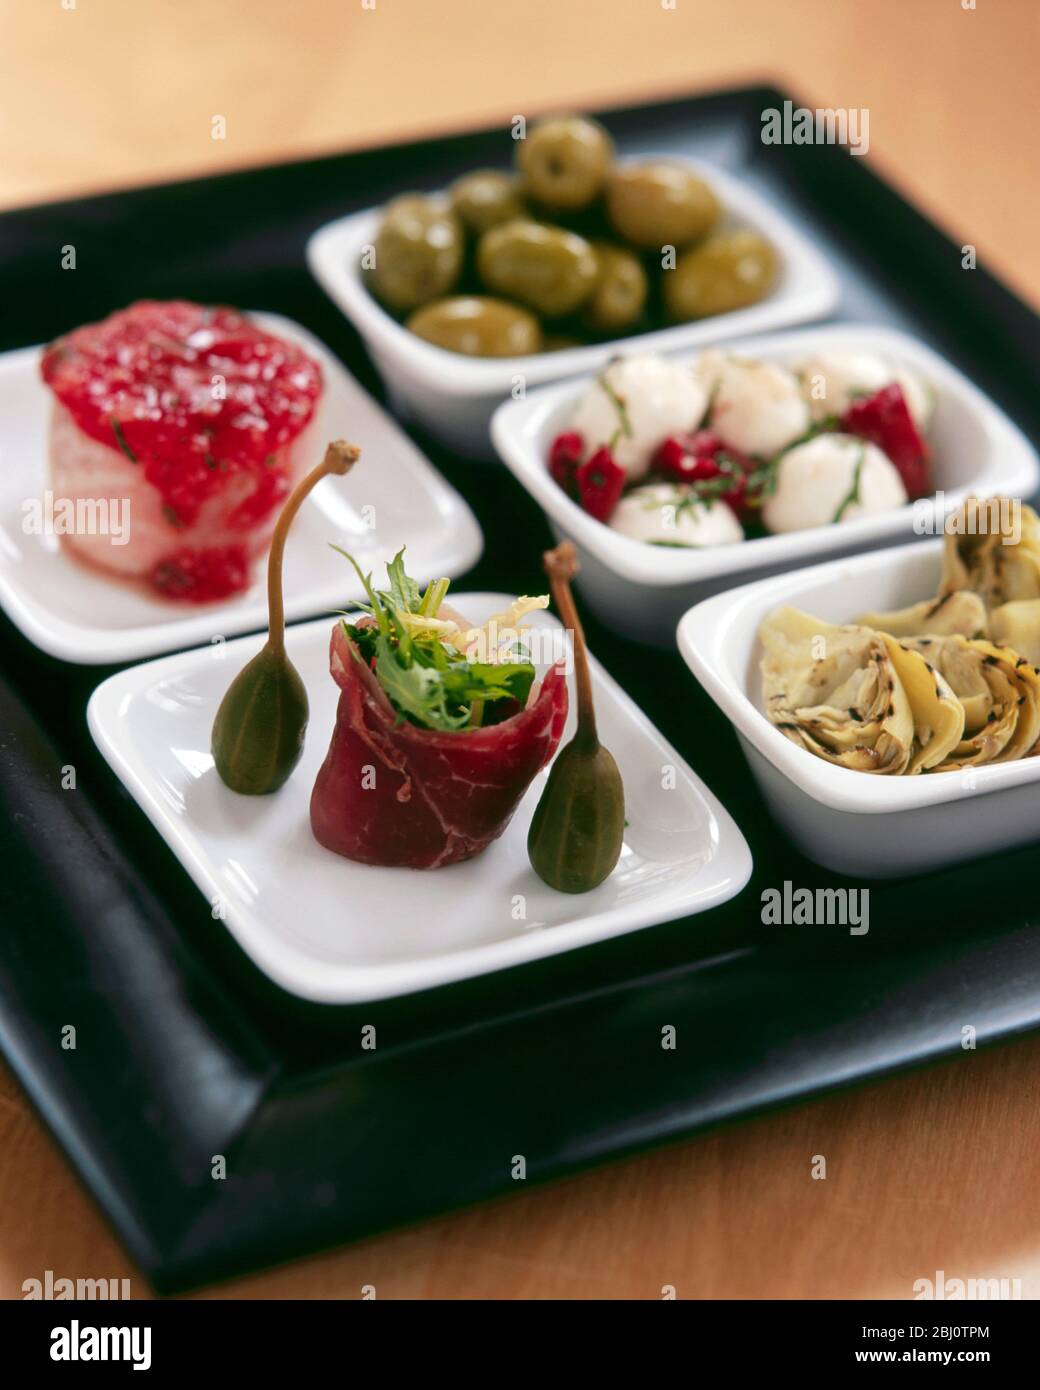 Tablett mit Tapas-Gerichten als Executive Desk Lunch - Stockfoto